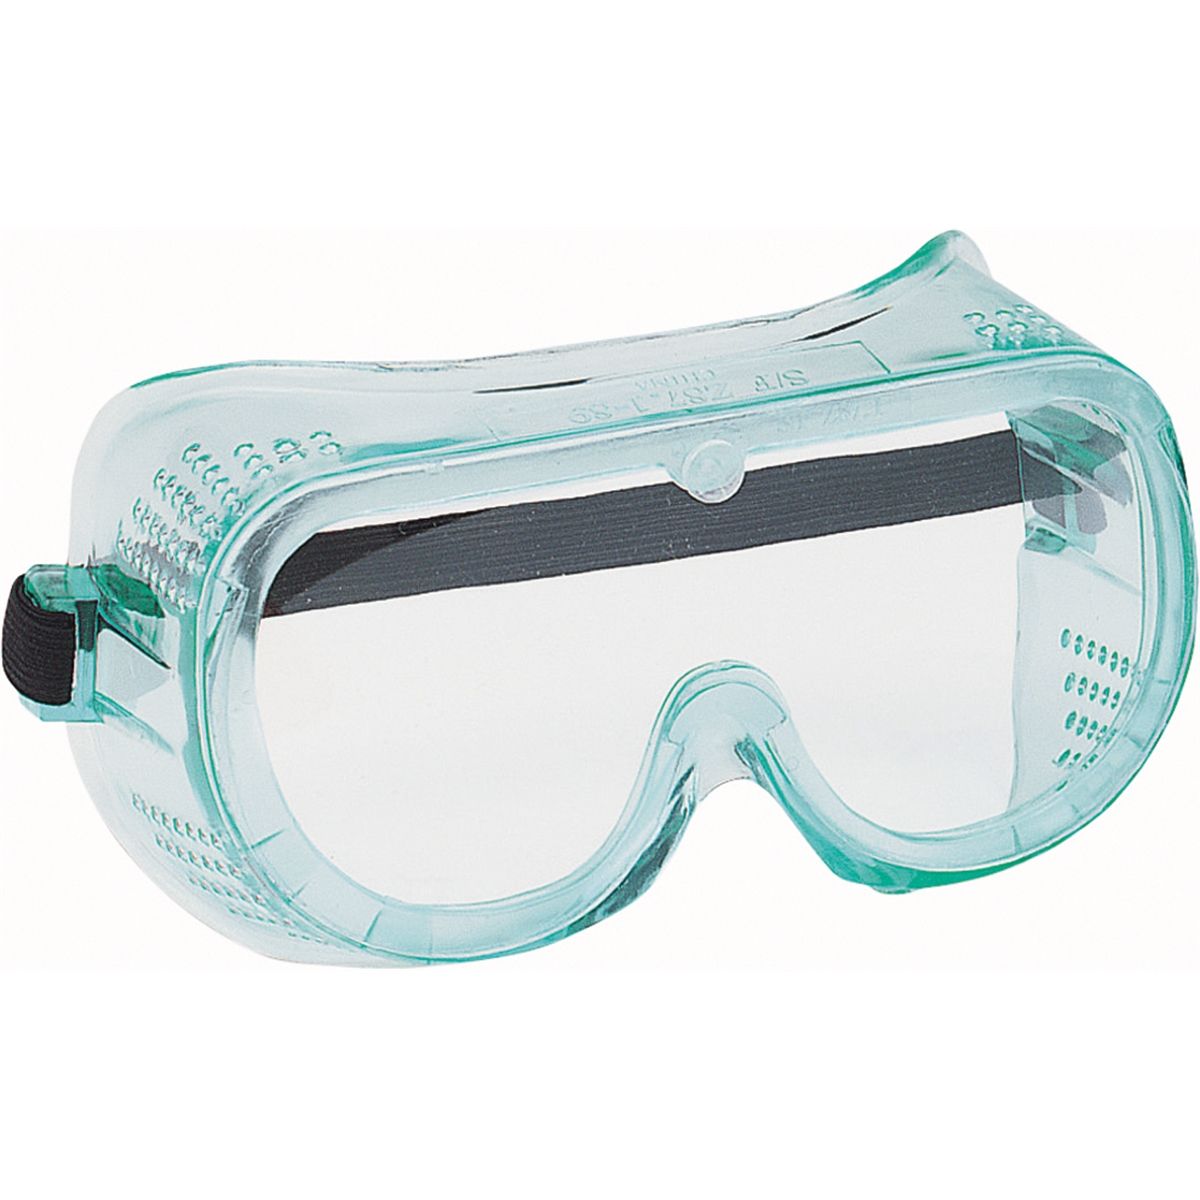 Лучшие защитные очки. Очки защитные прозрачные Clear Opti. Очки защитные прозрачные 74705. Jsg311-c очки защитные Pro Vision открытого типа. Очки защитные 3нд2 Адмирал РОСОМЗ 23231.